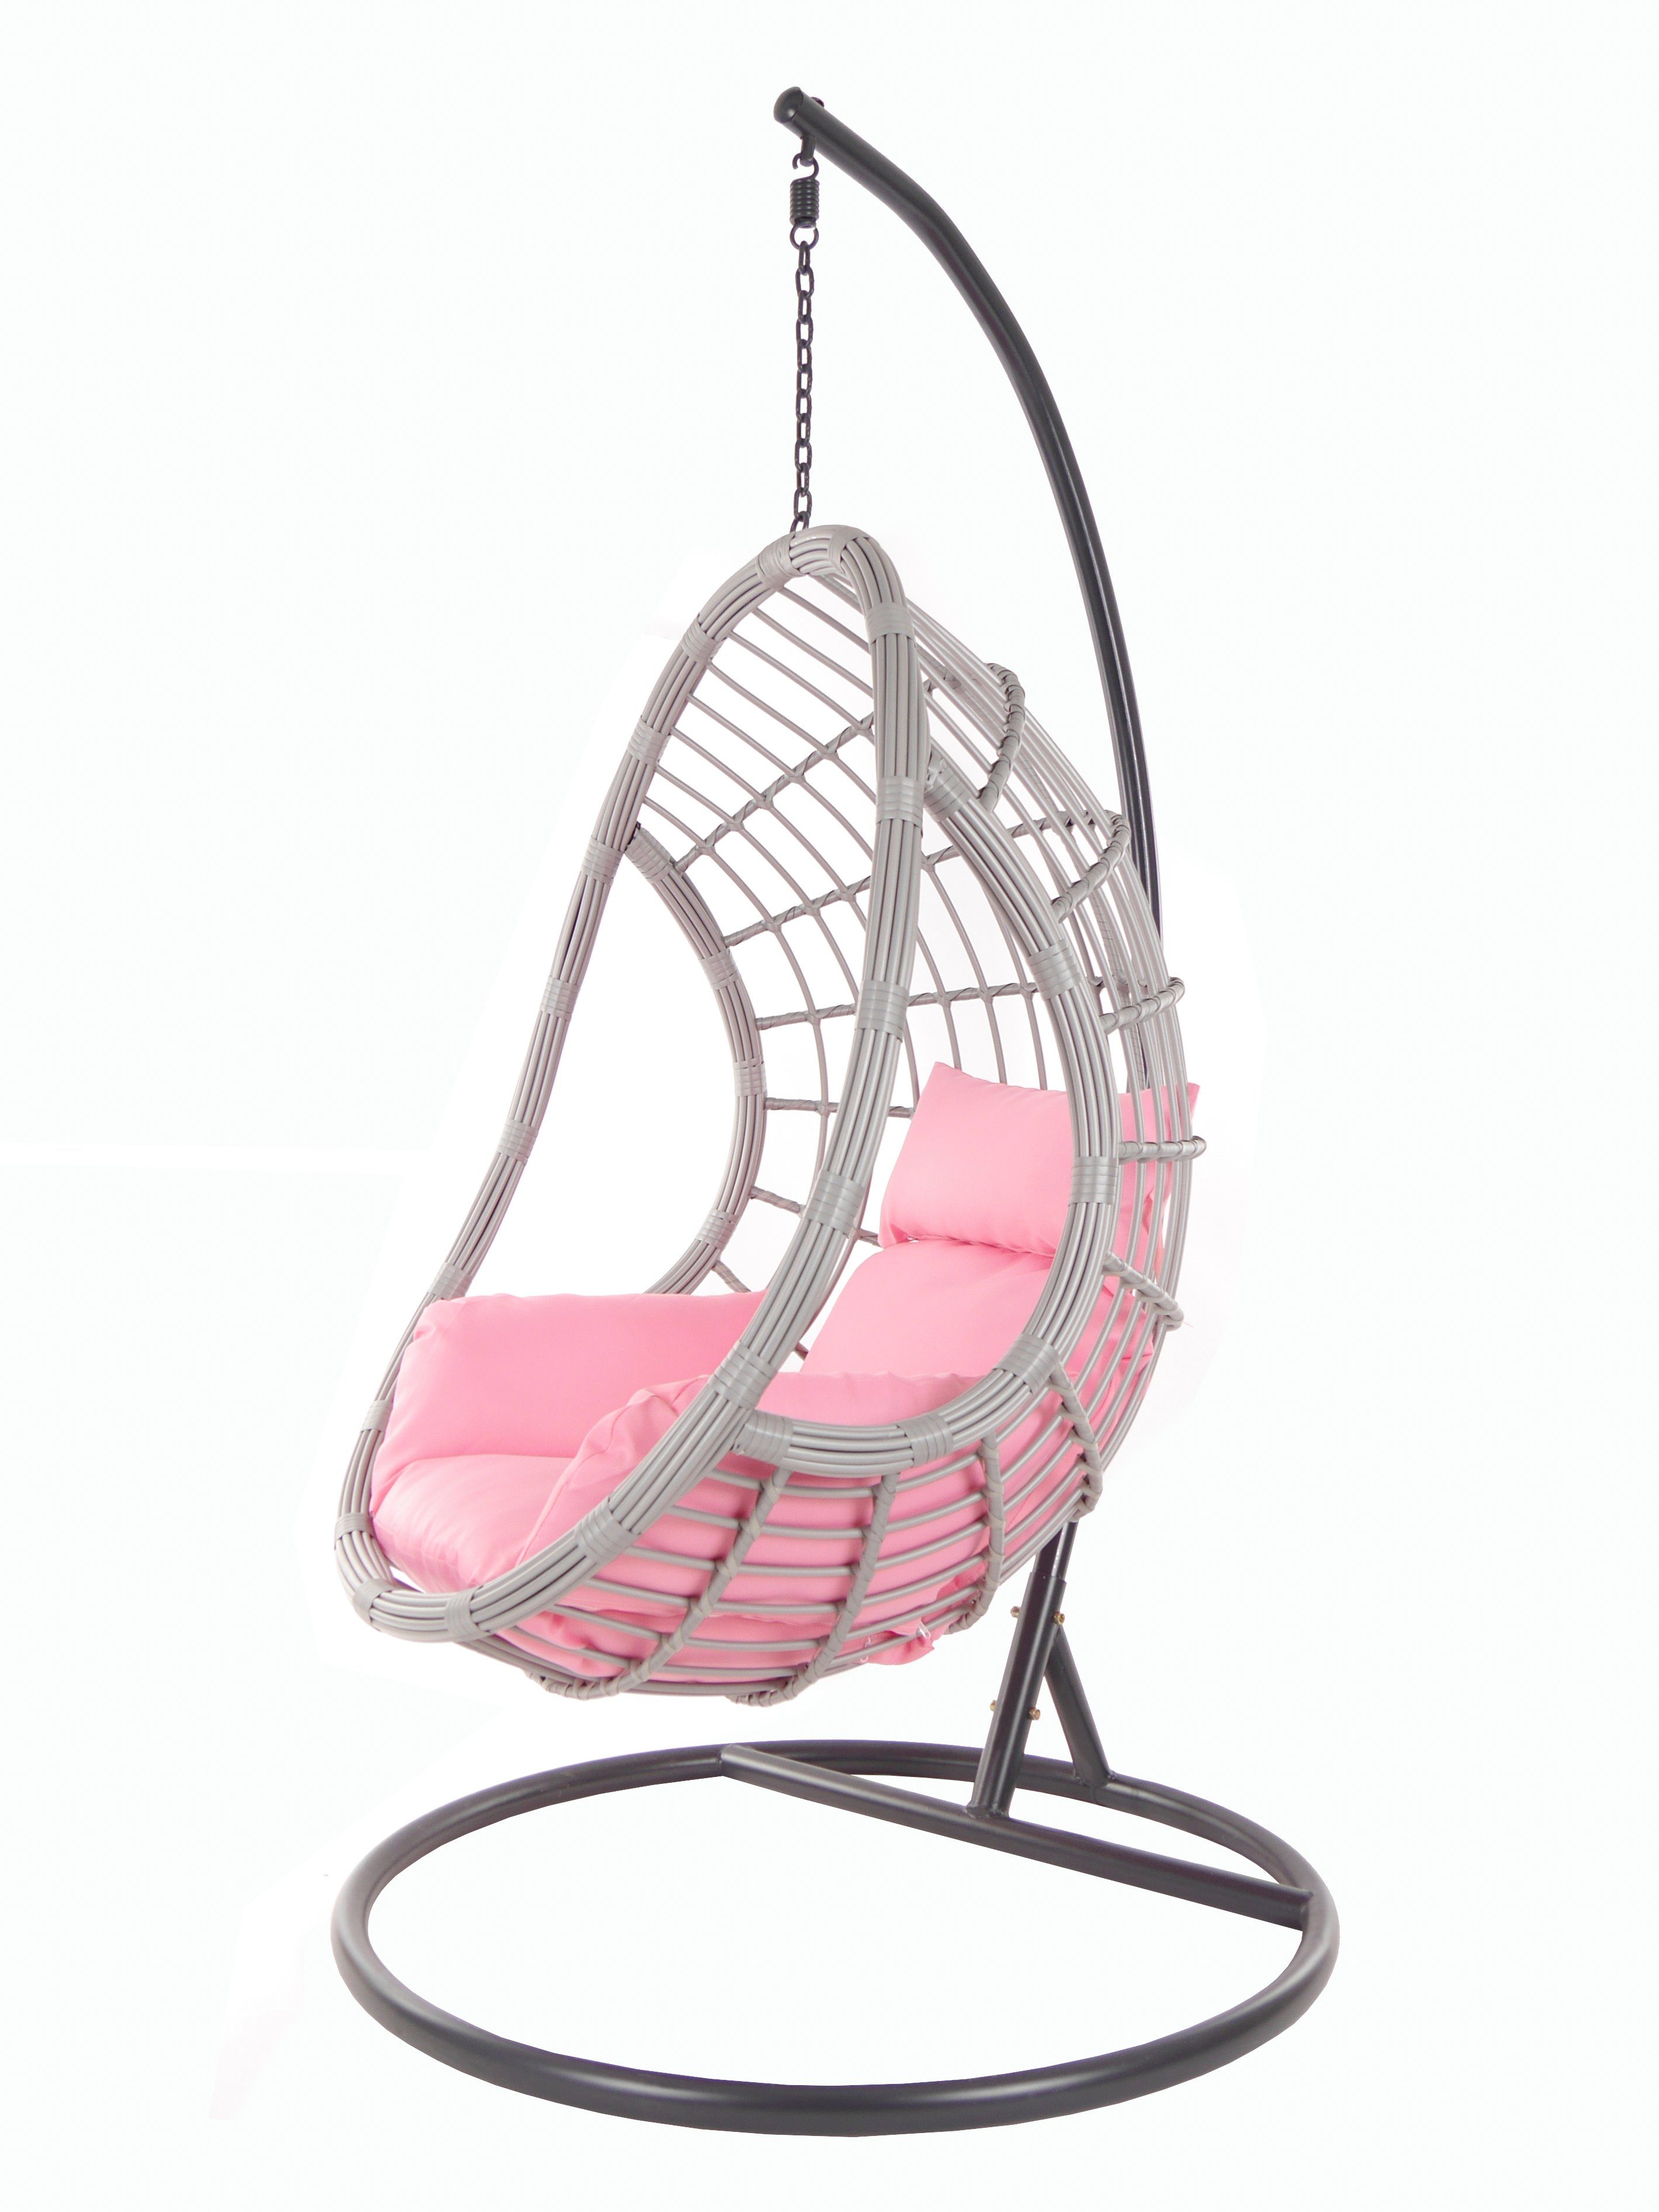 KIDEO Hängesessel PALMANOVA lightgrey, Schwebesessel mit Gestell und Kissen, Swing Chair, Loungemöbel rosa (3002 lemonade)